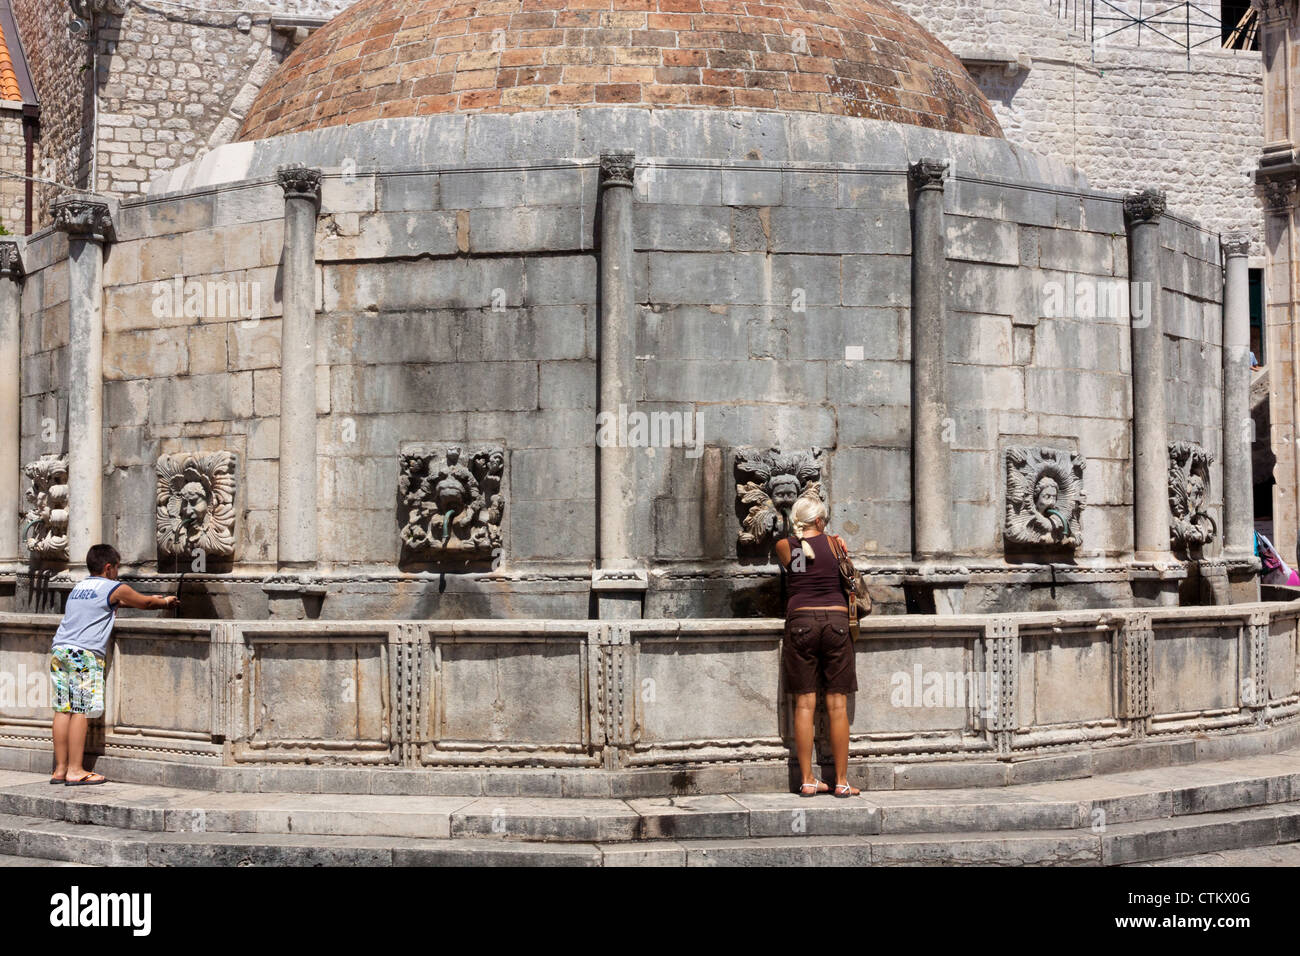 Les gens de l'eau potable de la grande fontaine d'Onofrio à Dubrovnik Croatie Banque D'Images